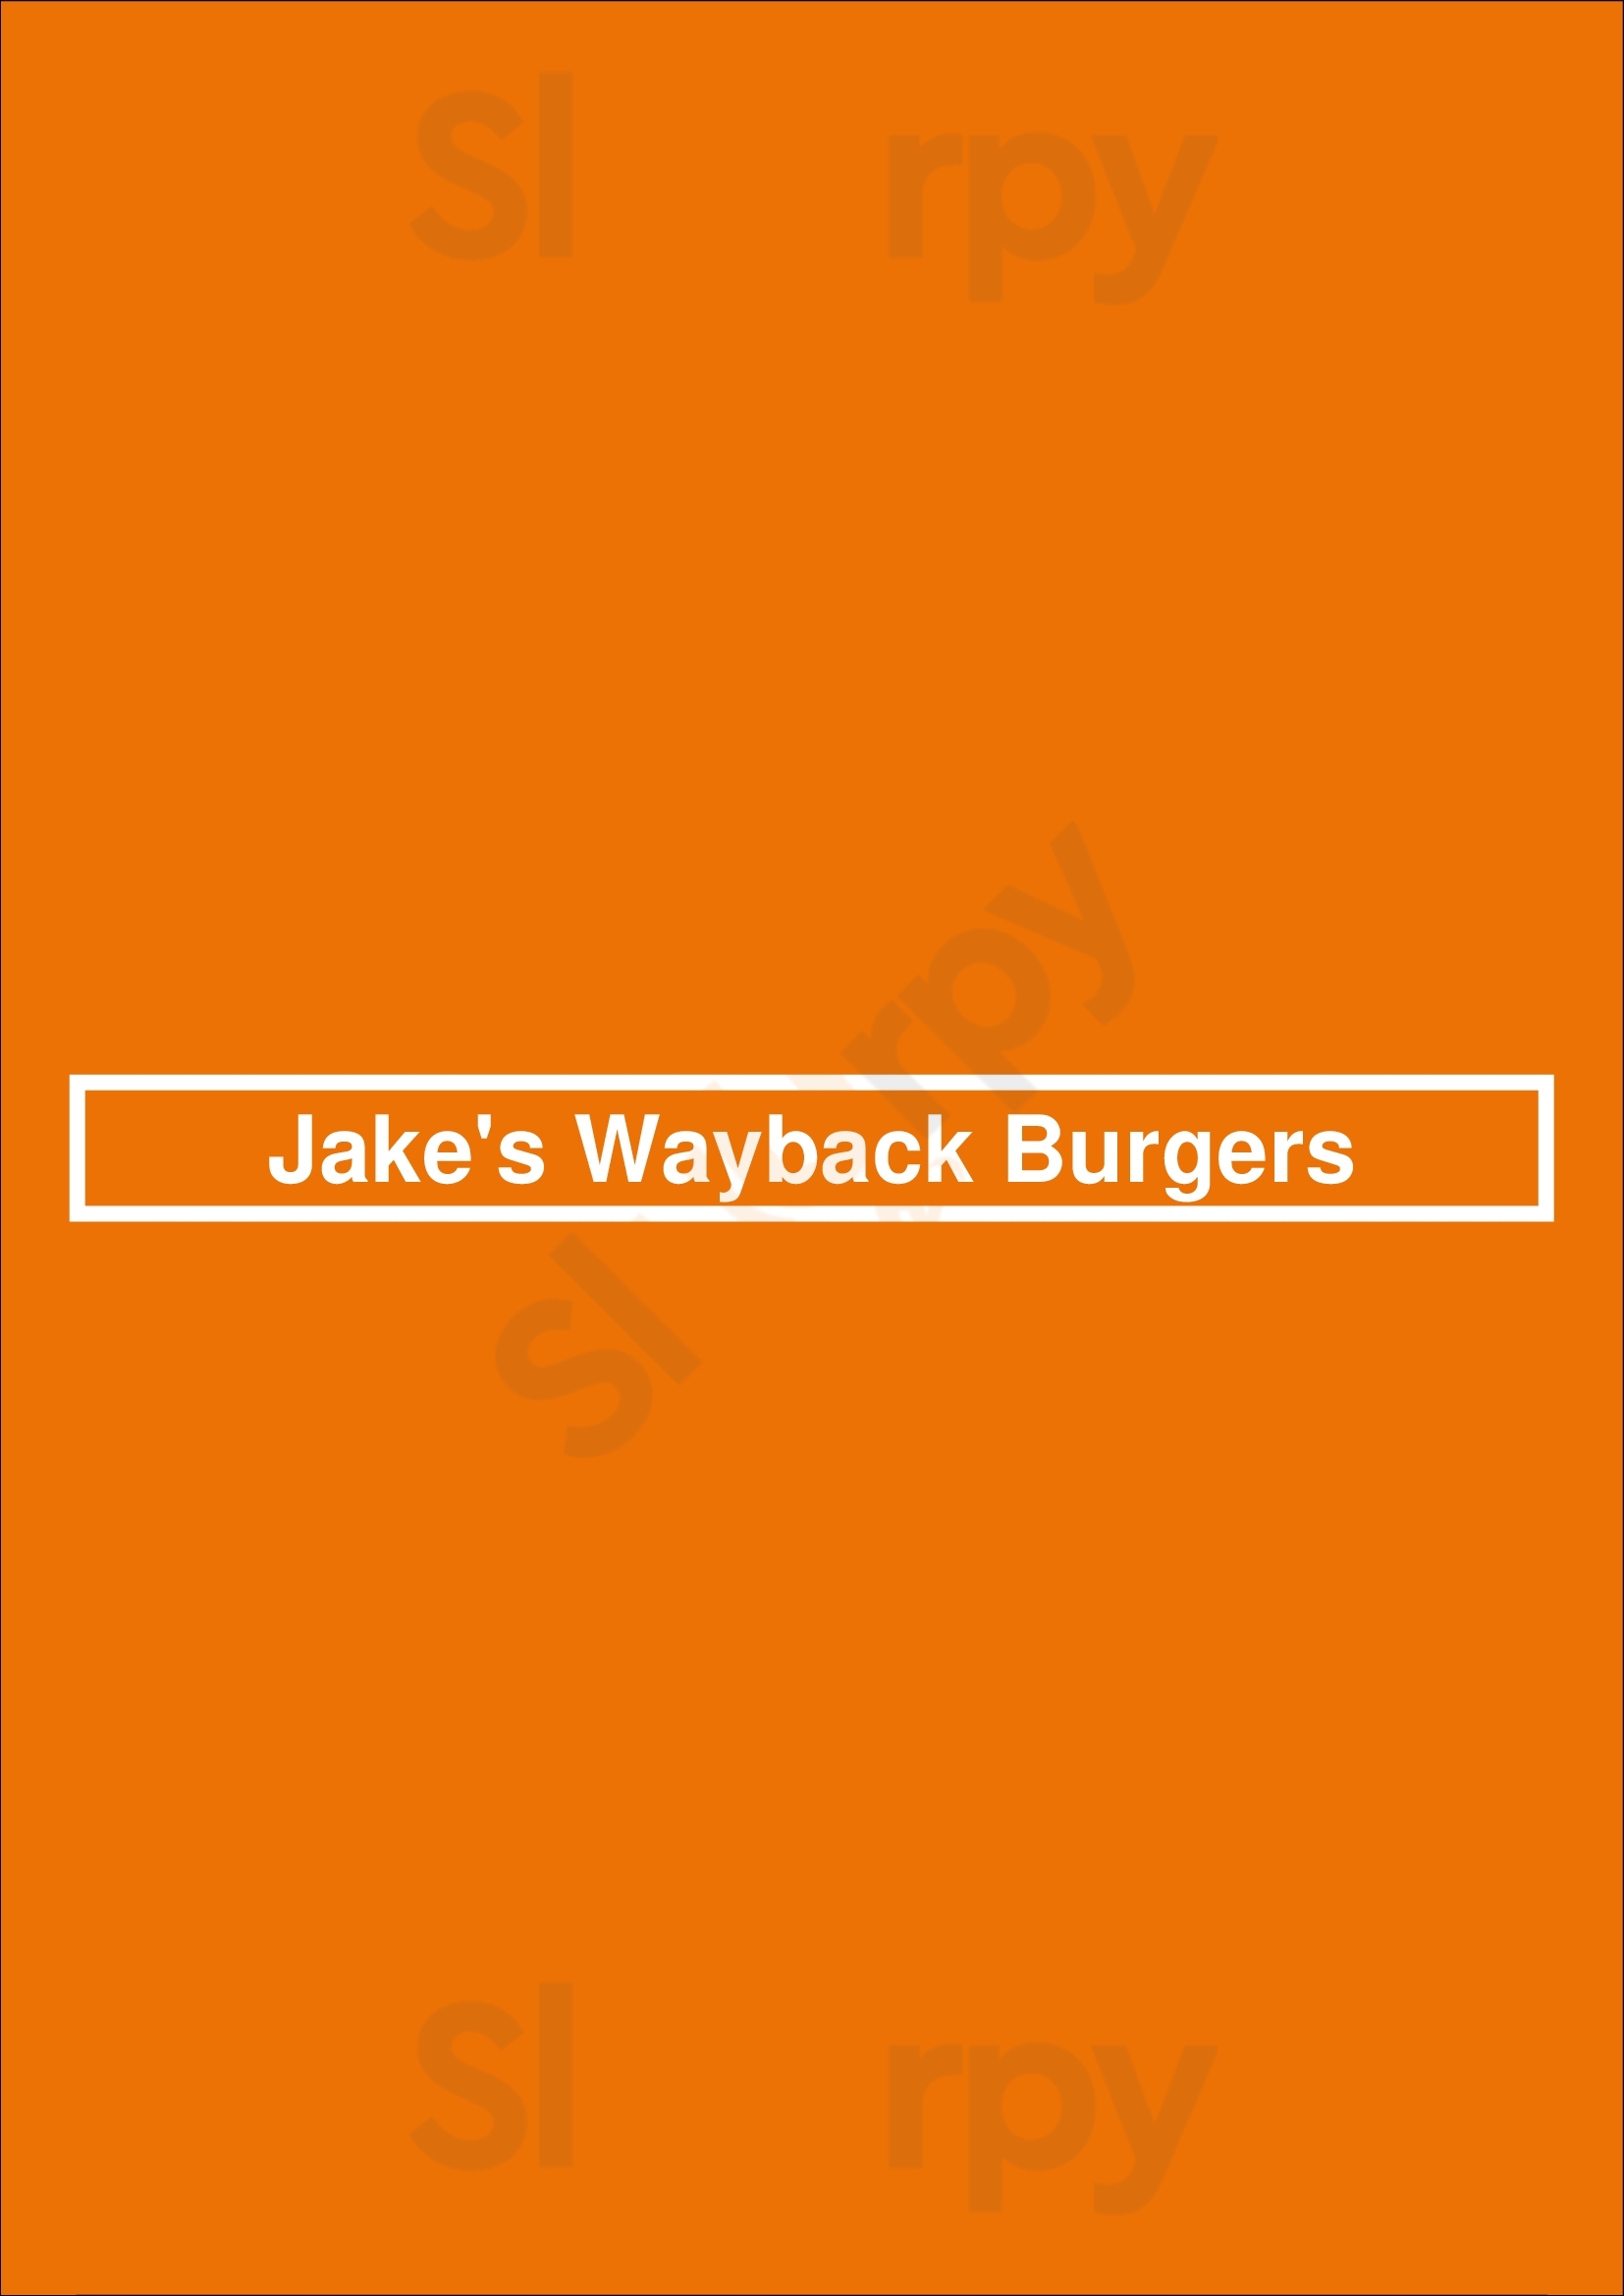 Wayback Burgers Worcester Menu - 1